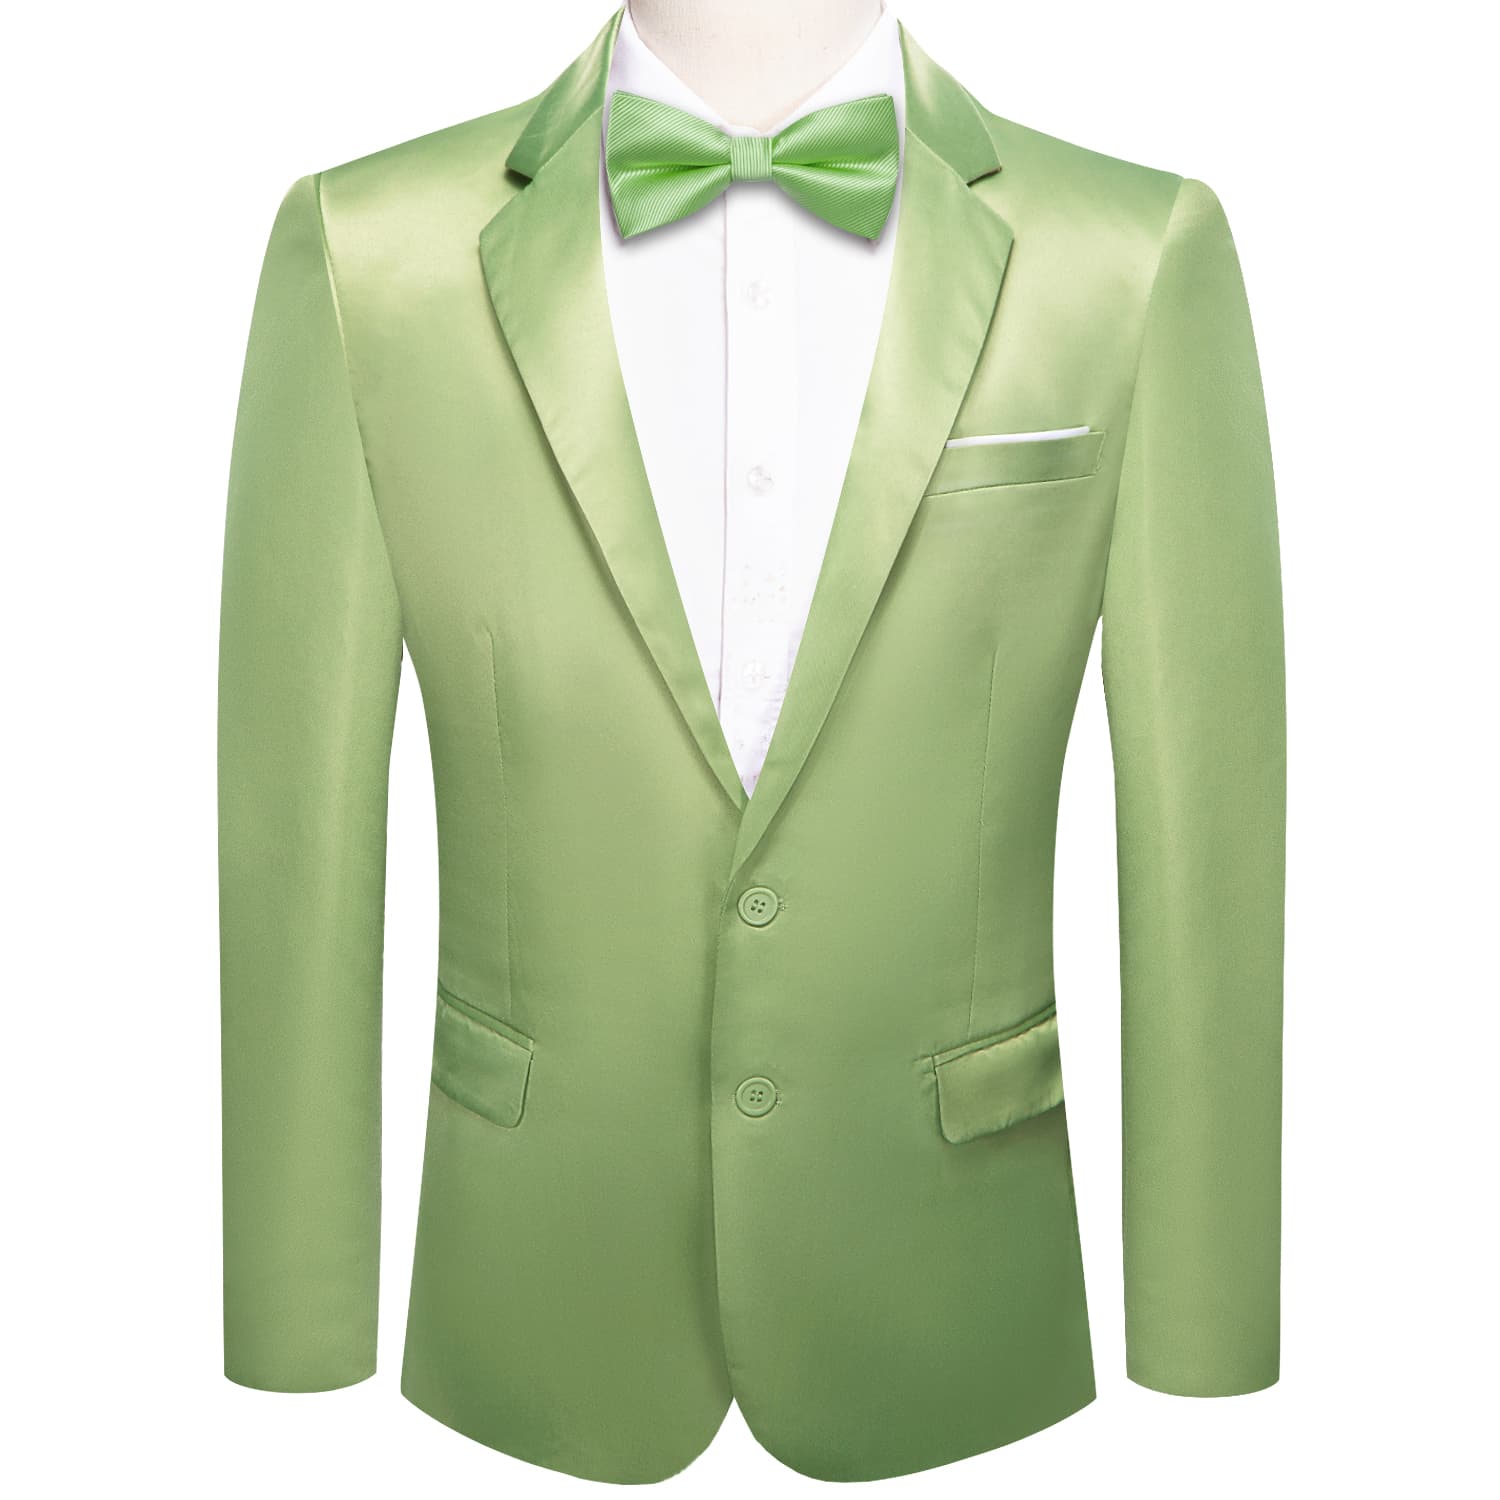 Blazer Light Green Men's Wedding Business Solid Top Men Suit